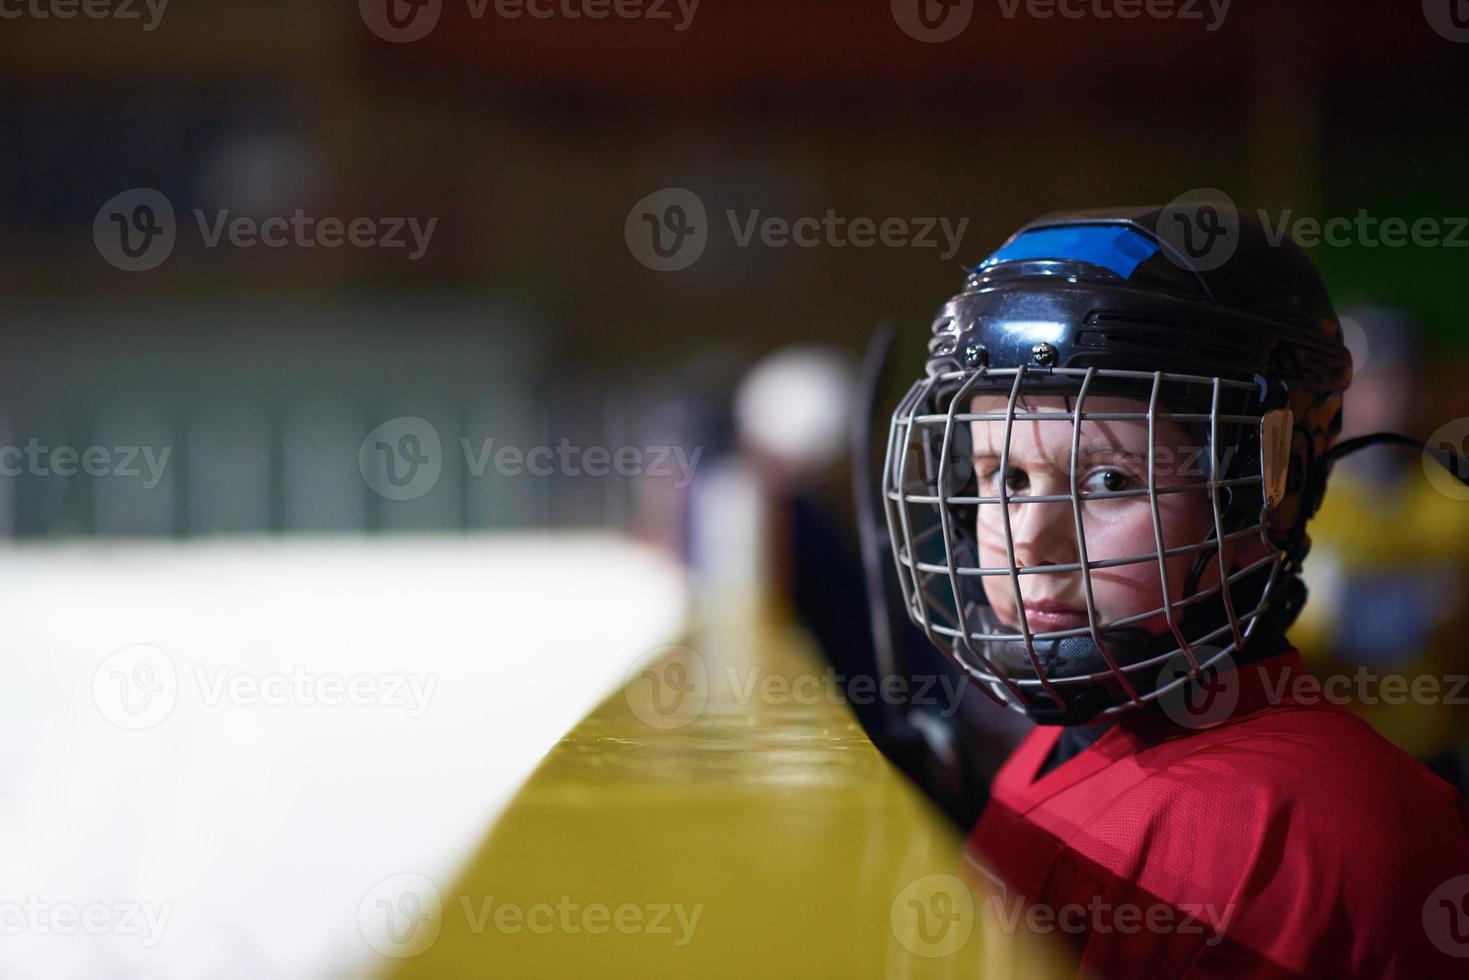 barn is hockey spelare på bänk foto